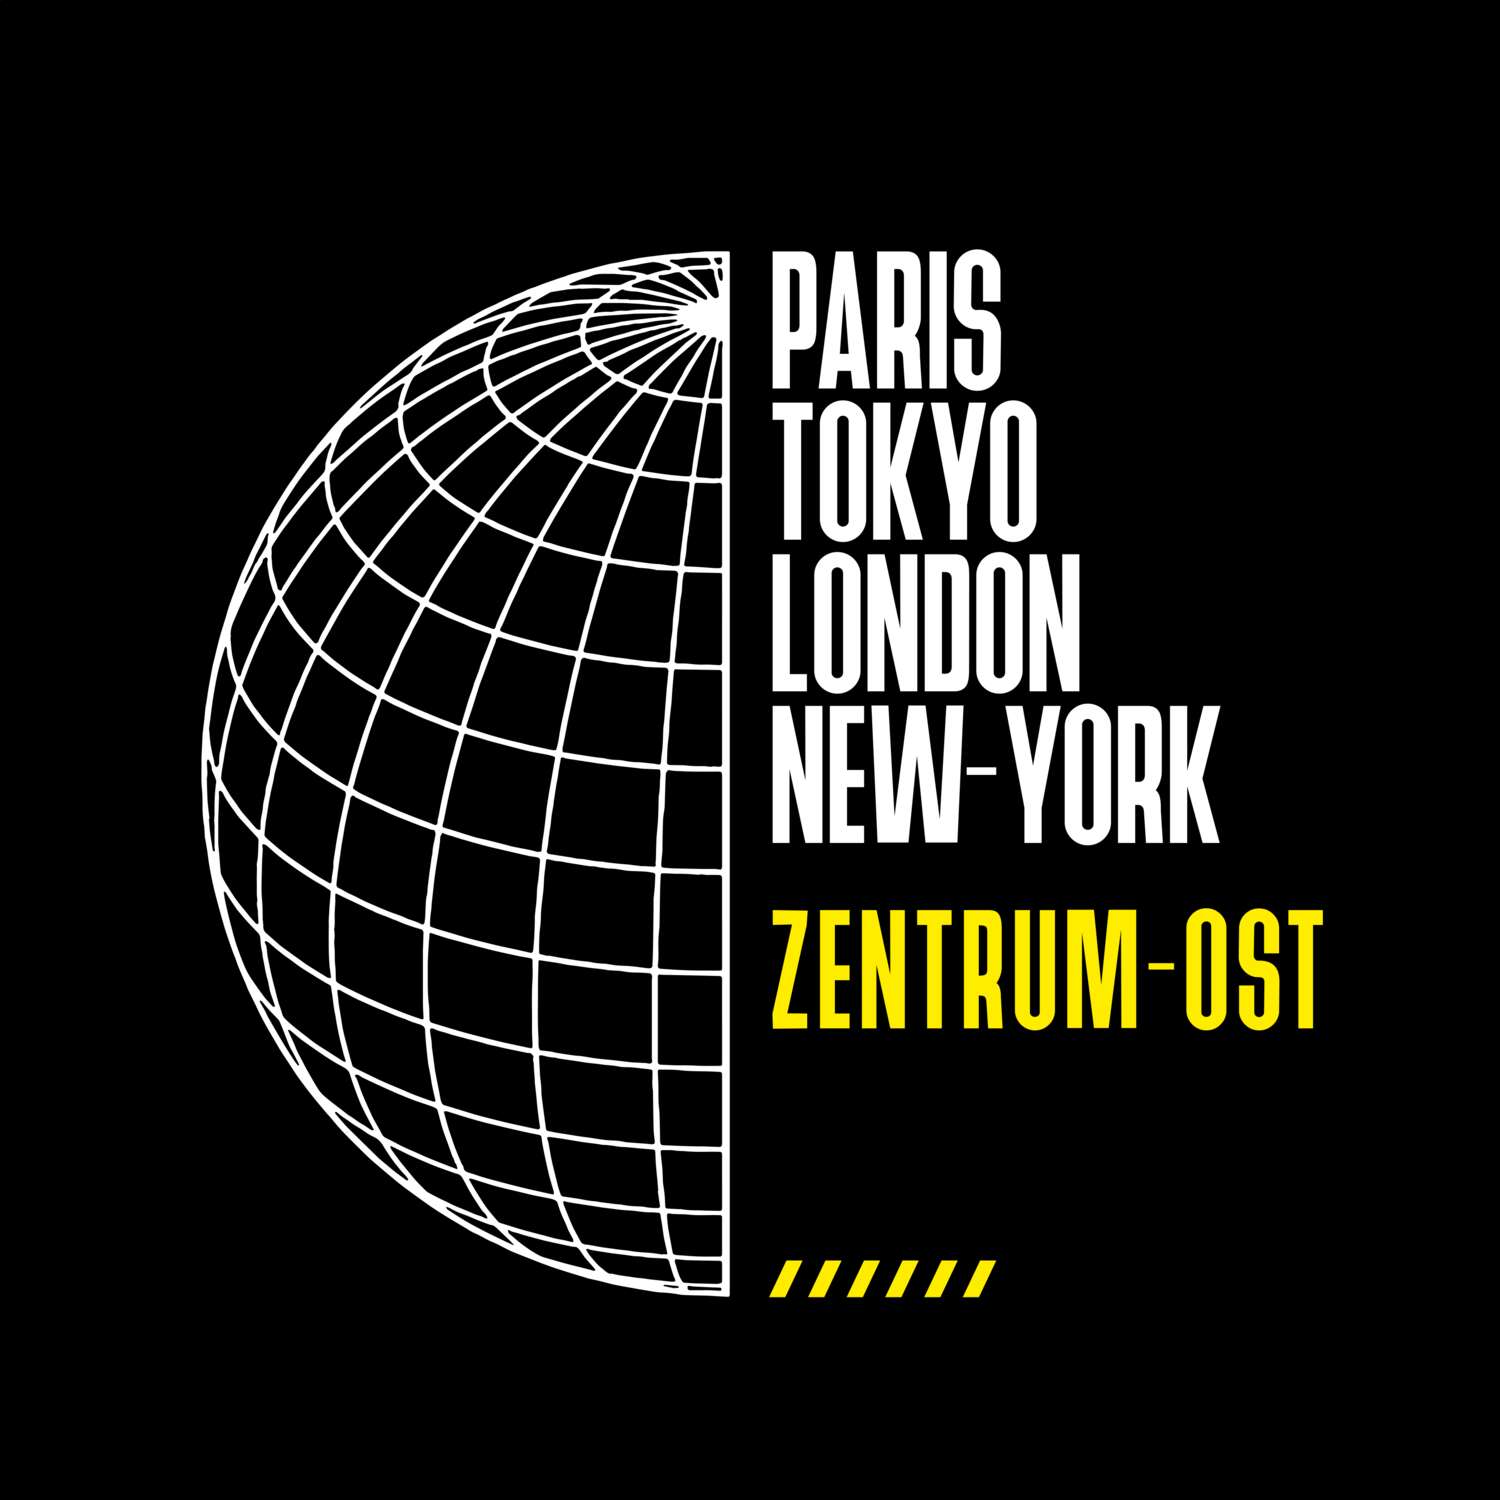 Zentrum-Ost T-Shirt »Paris Tokyo London«